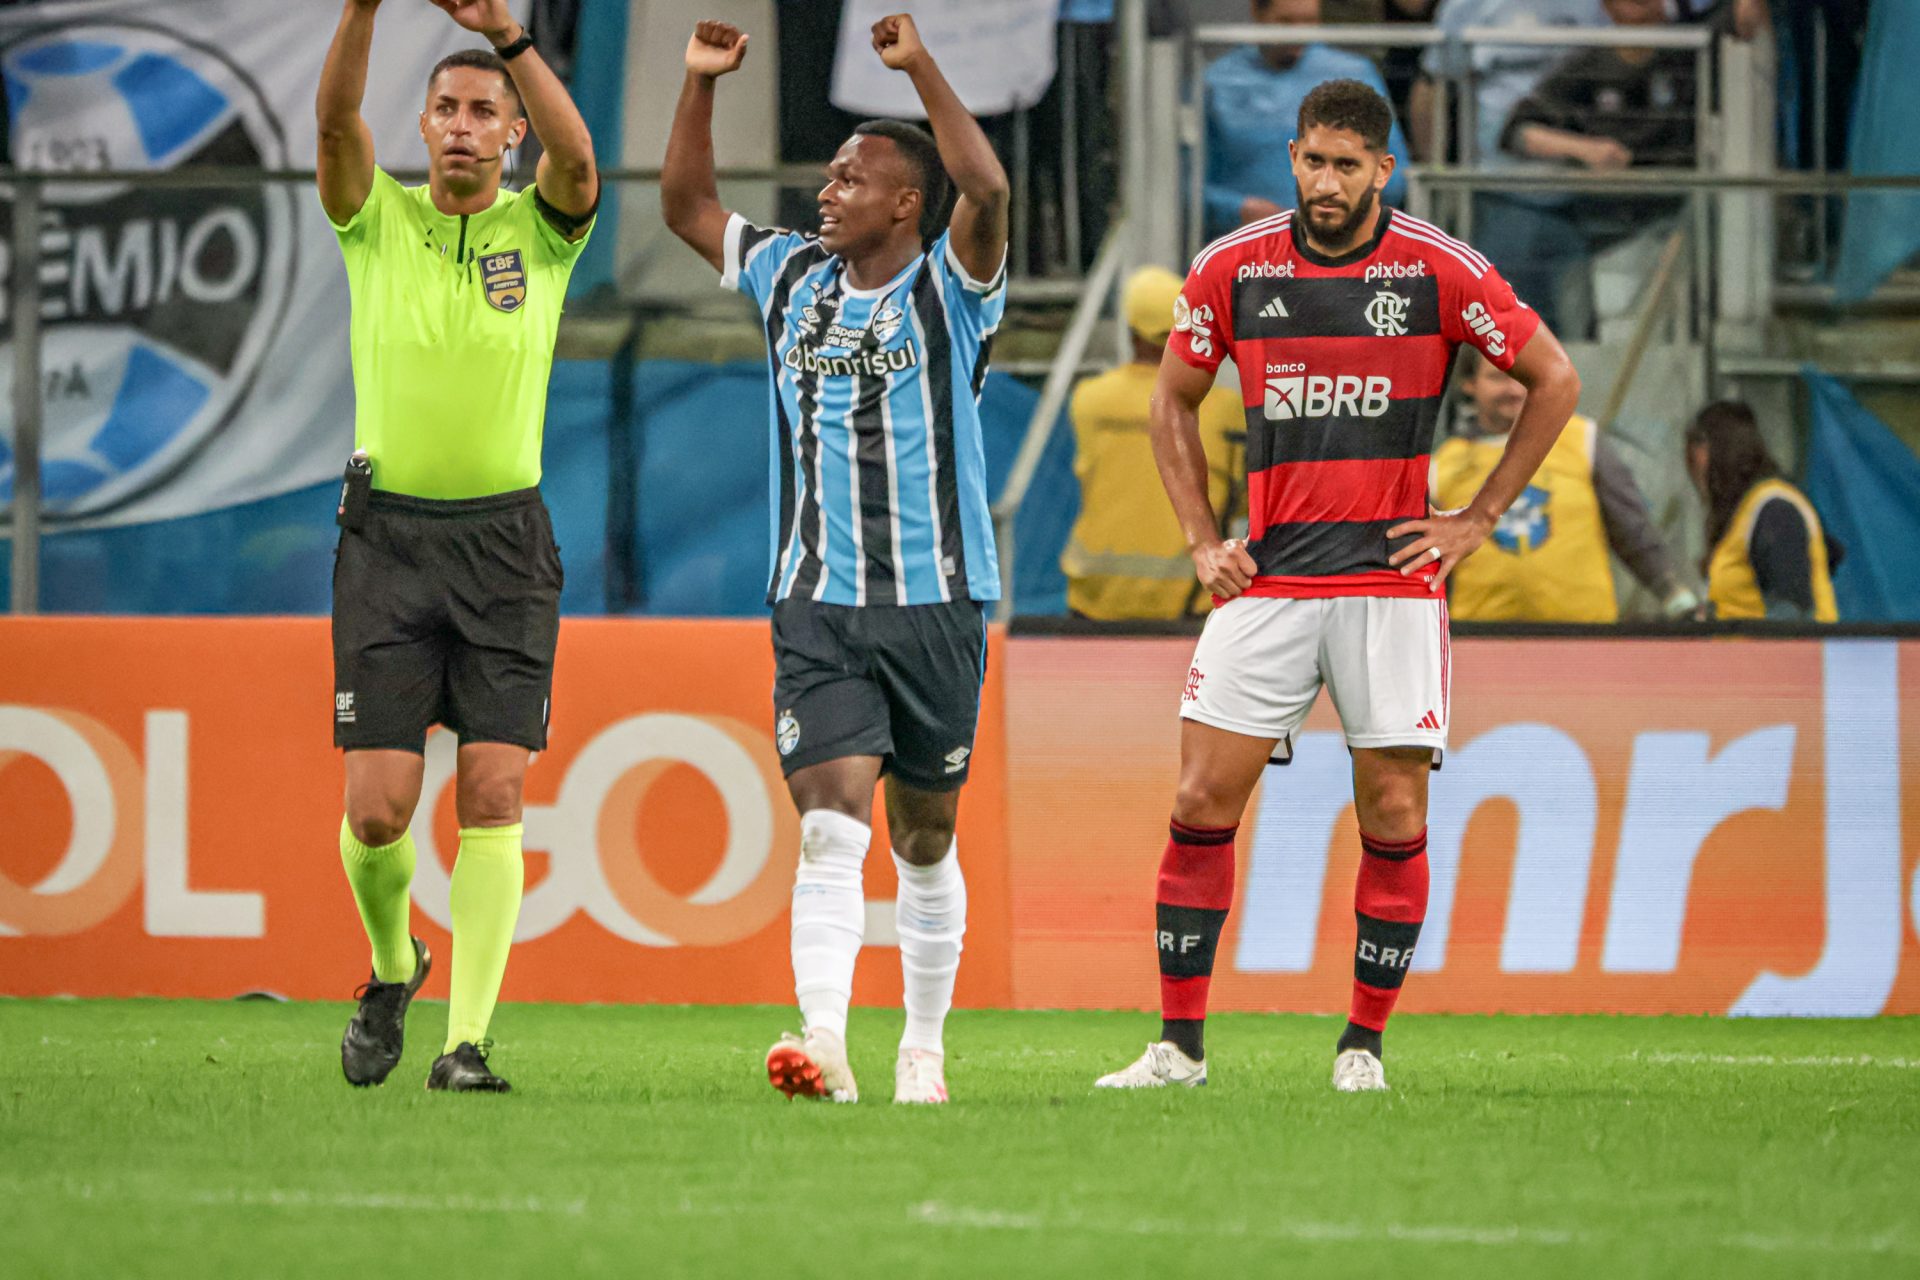 Nathan Fernandes, do Grêmio, comemora seu gol na partida contra o Flamengo - Foto: Elton Silveira/W9 Press/Estadão Conteúdo